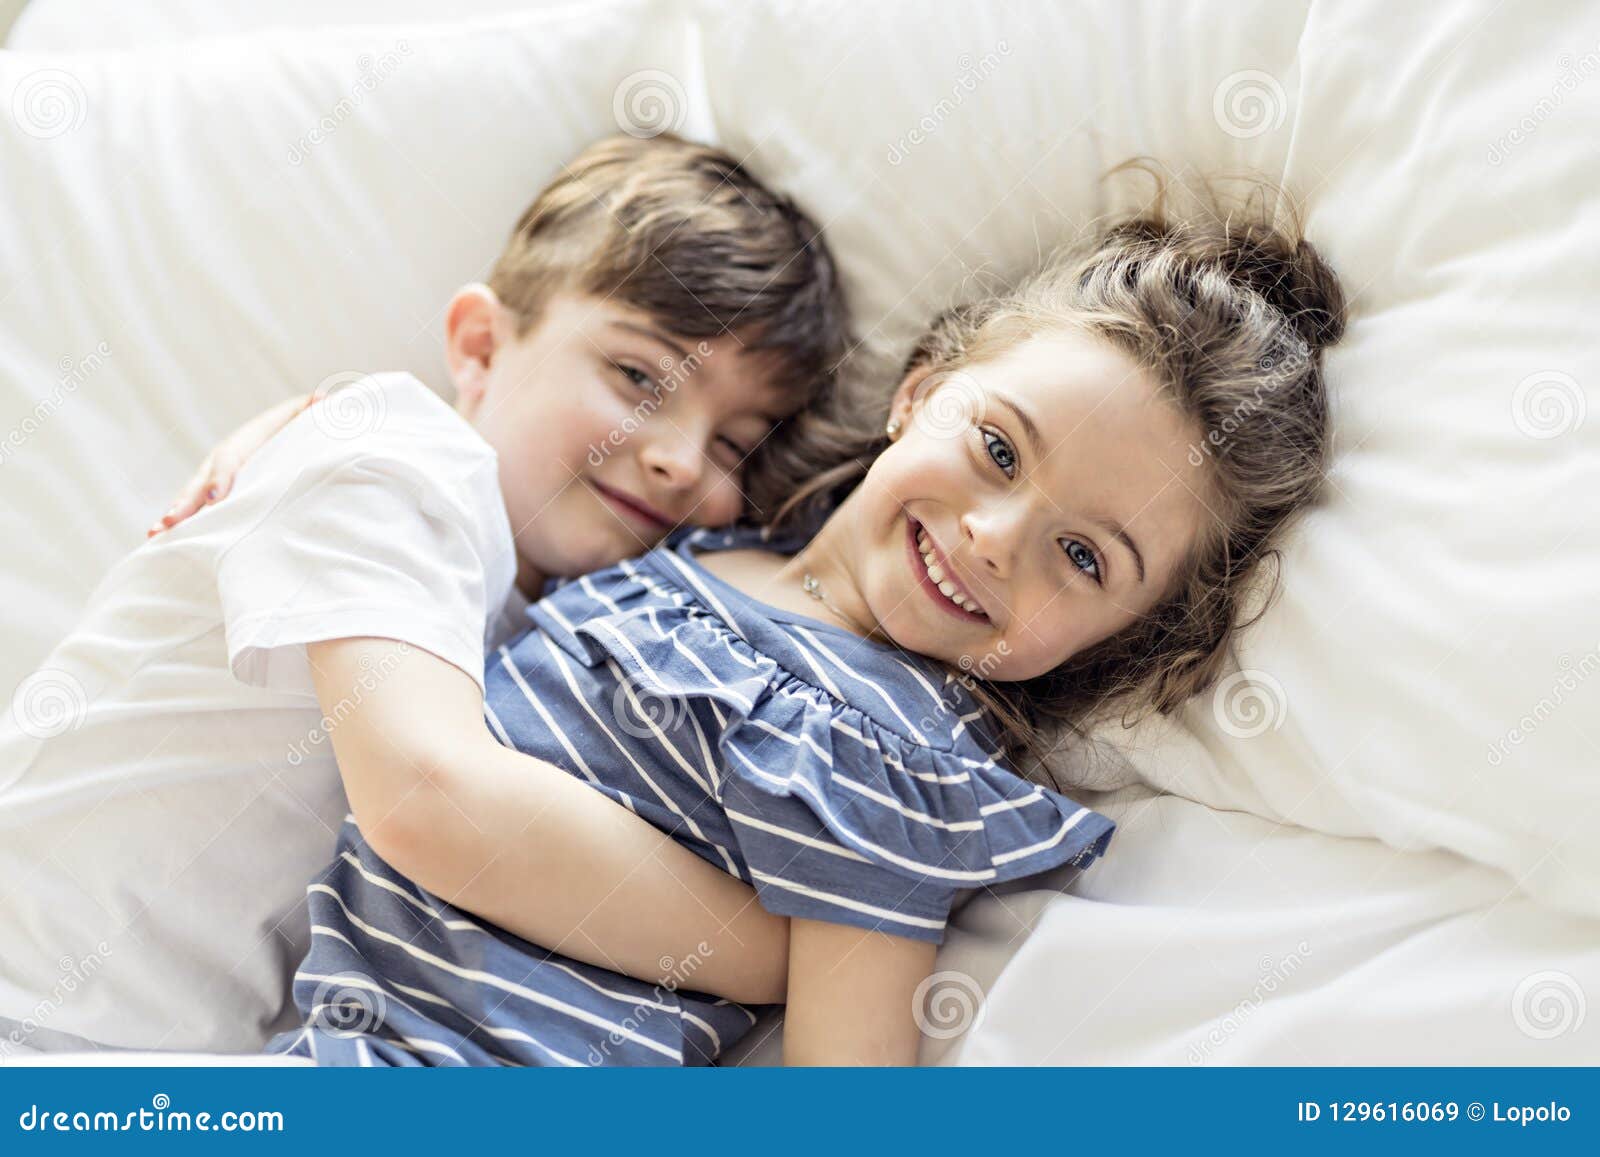 Брат пришел к сестре в постель. Братик и сестричка в кровати. Фотосессия брат и сестра. С сестренкой в постели. Мальчик лежит на маме.